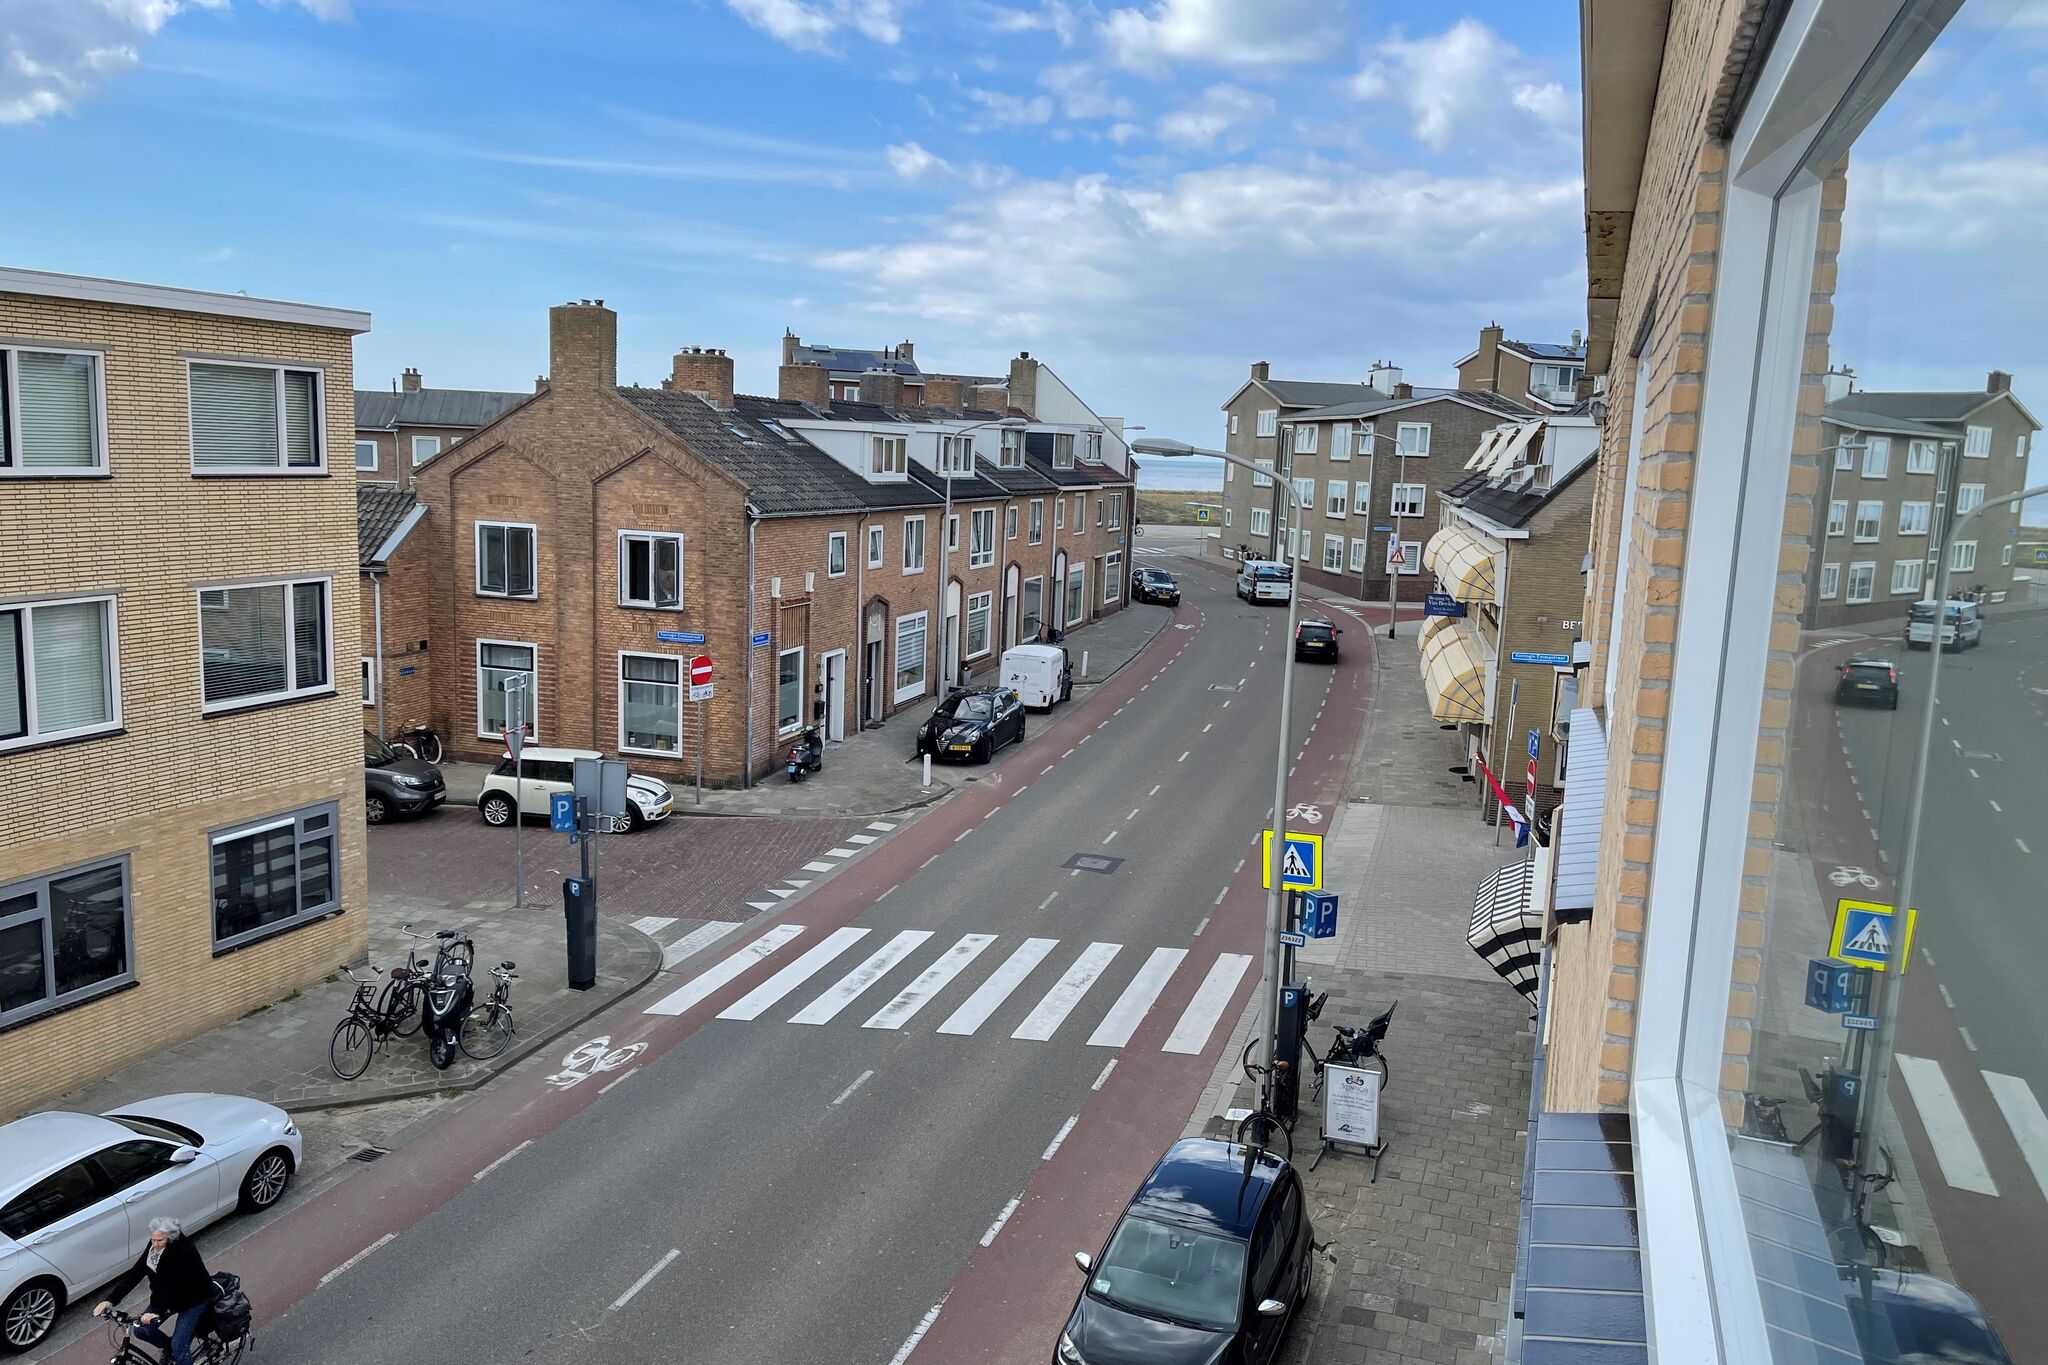 Appartement met zeezicht en parkeerplaats in Katwijk aan Zee